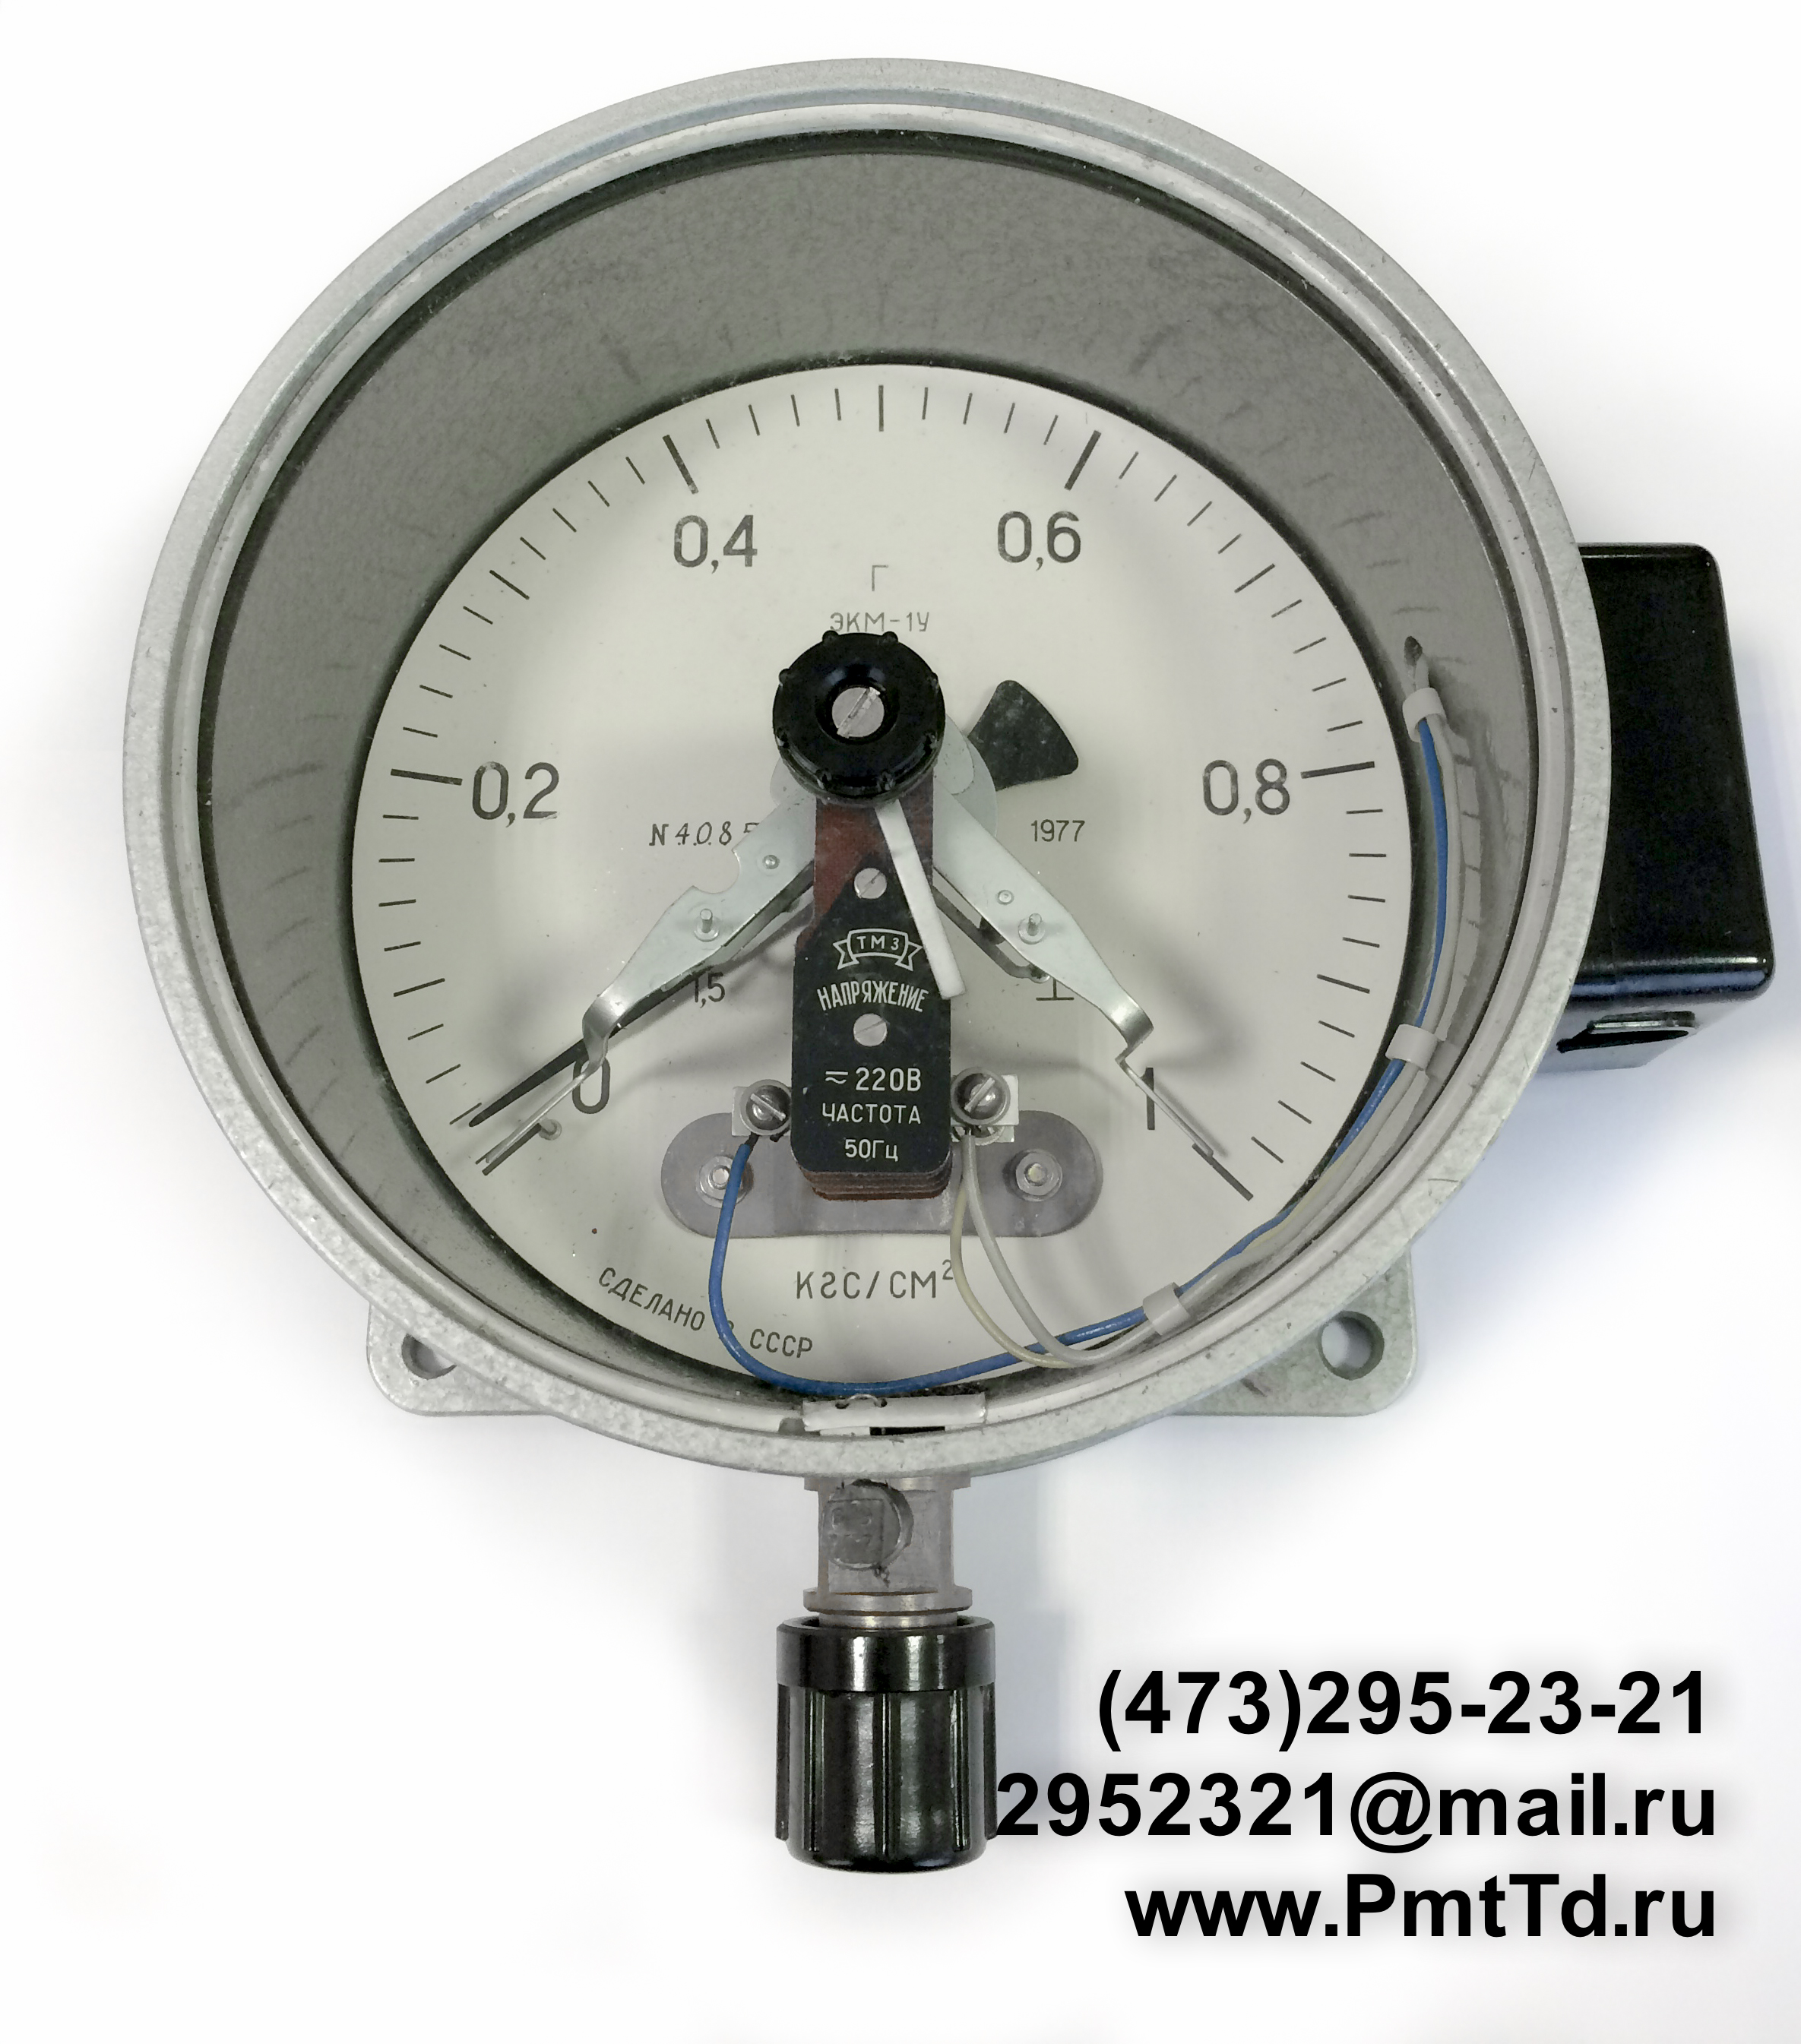 Электроконтактный манометр ЭКМ-1У 0-10 кгс/см2